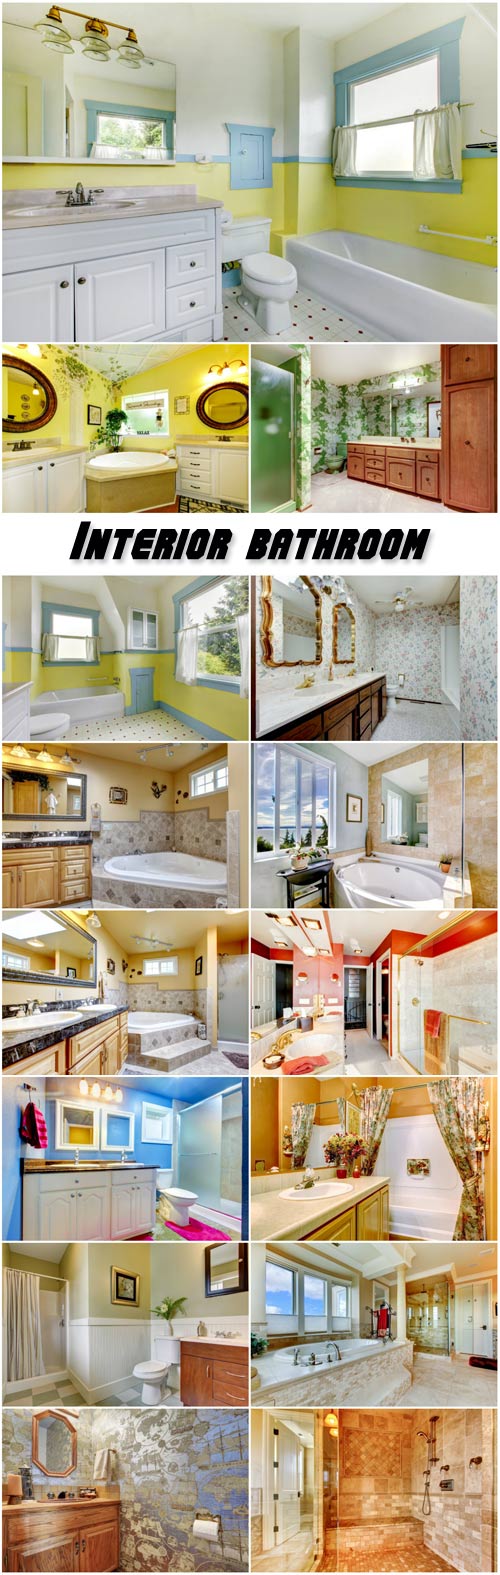 Interior bathroom